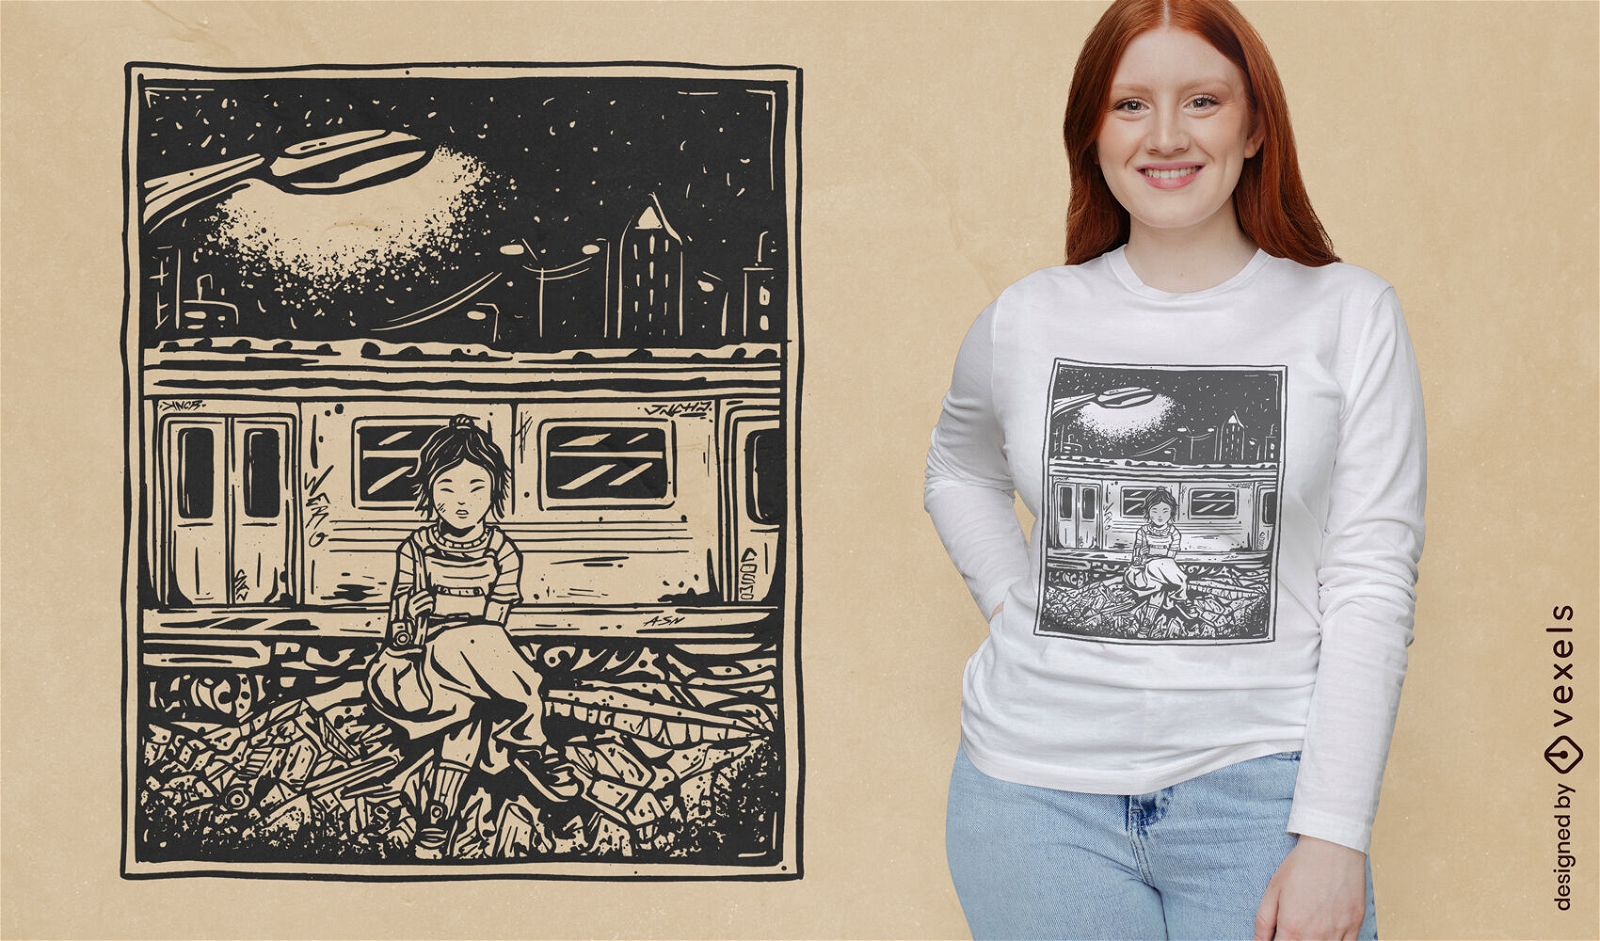 Chica en diseño de camiseta de parada de tren.